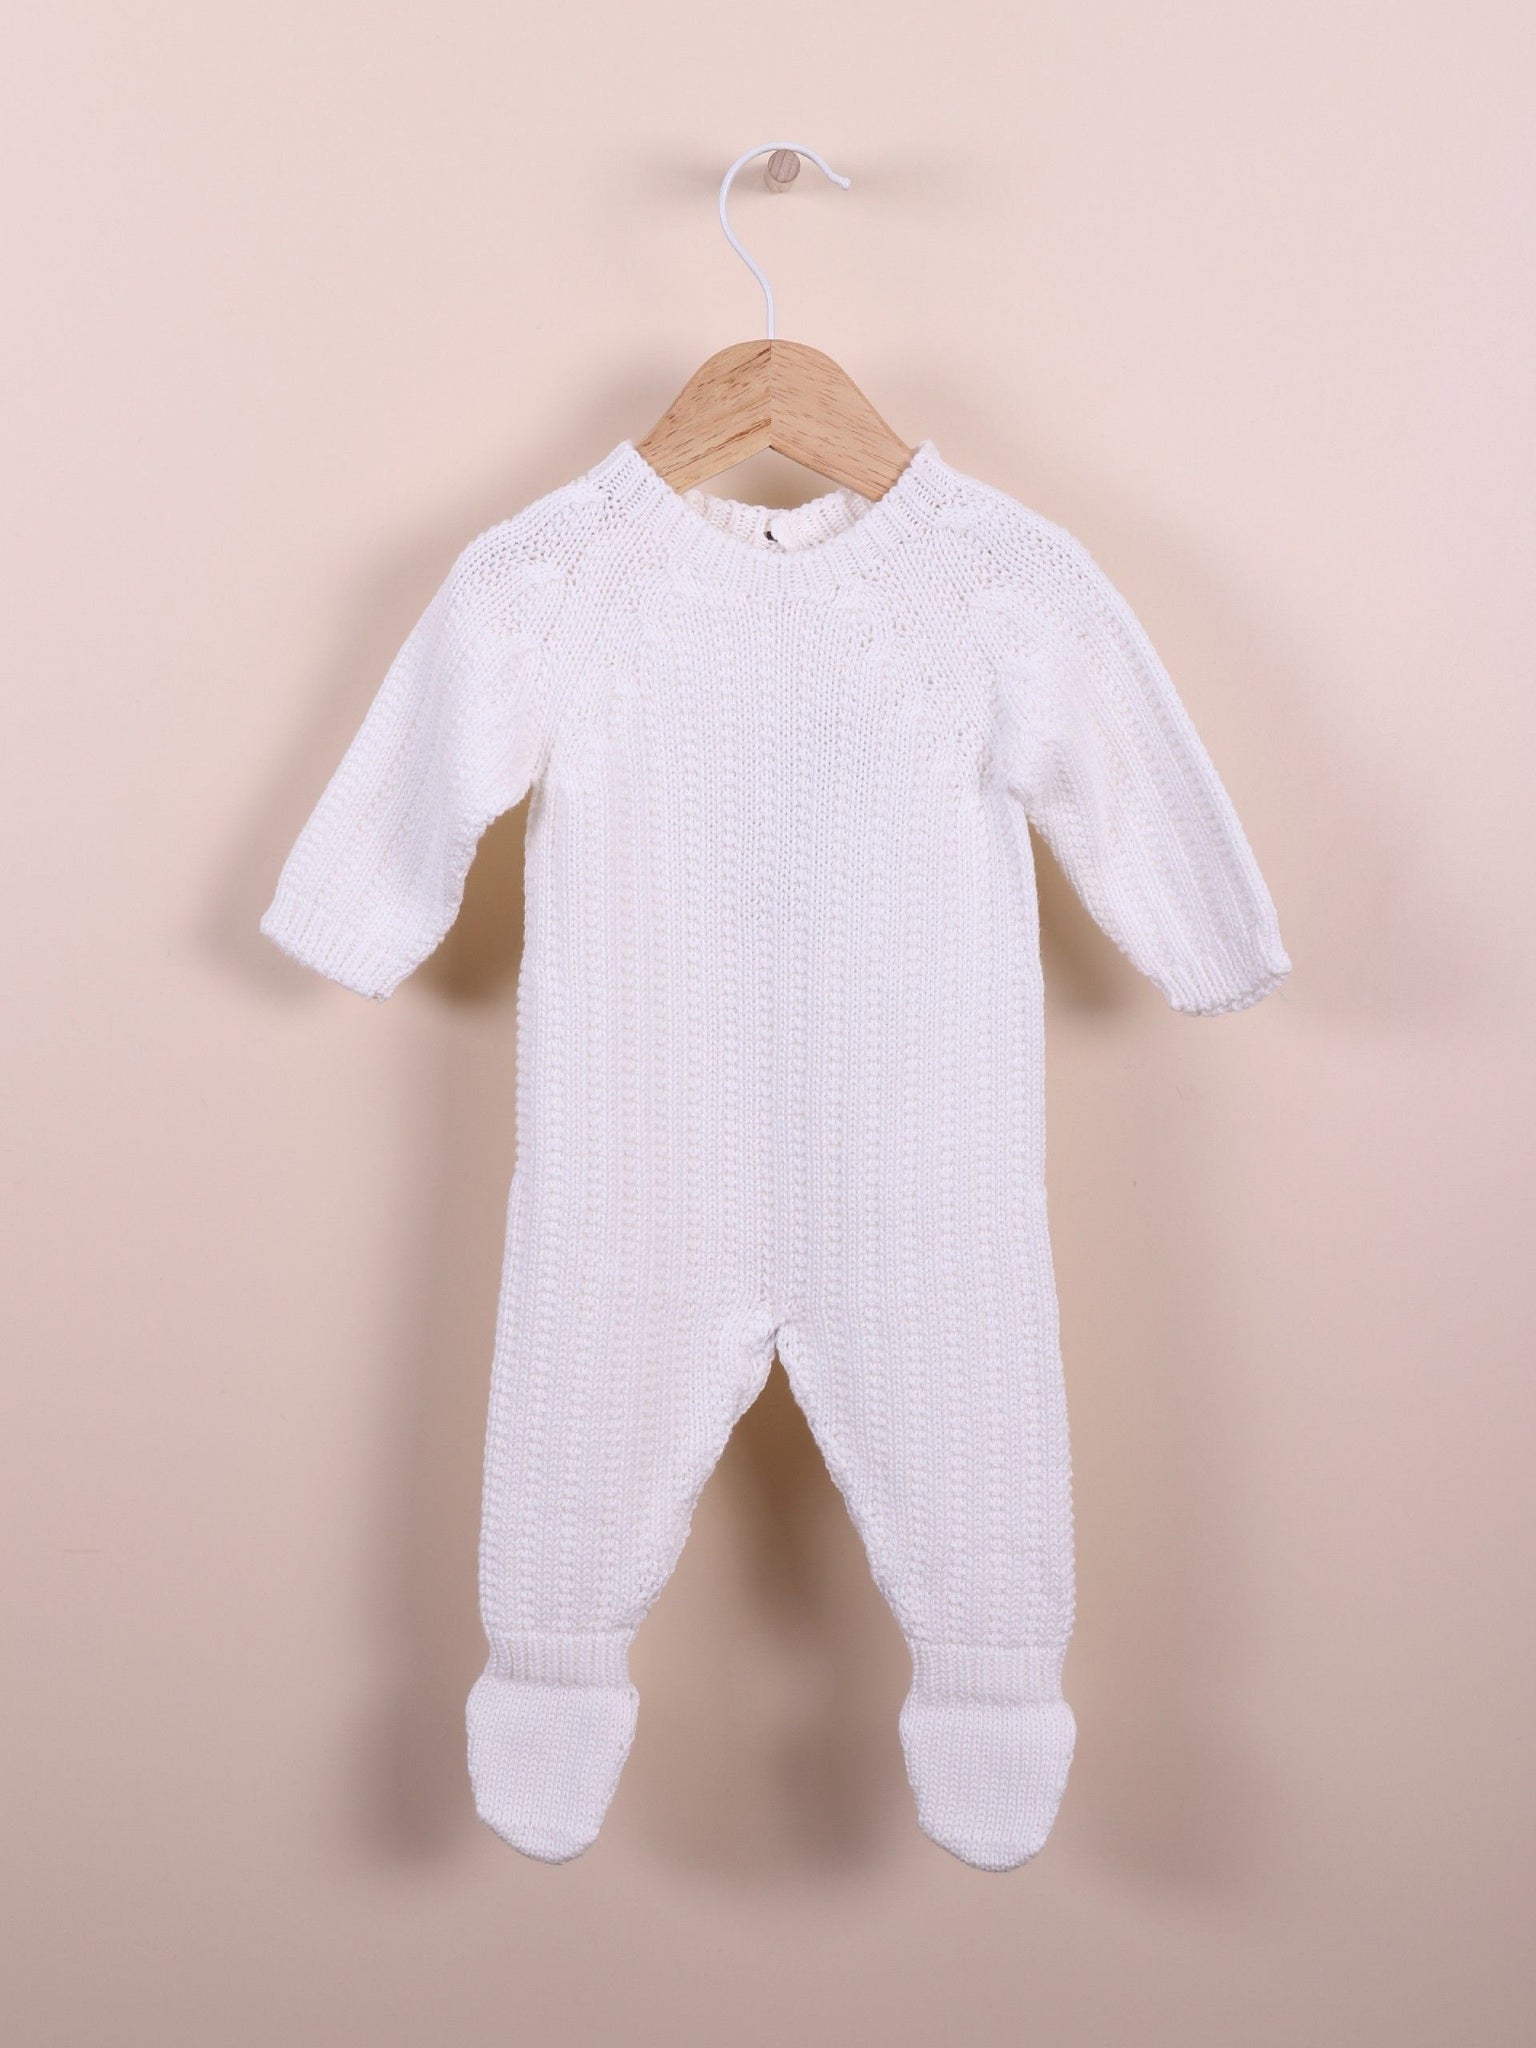 Babygrow tricotado em algodão orgânico